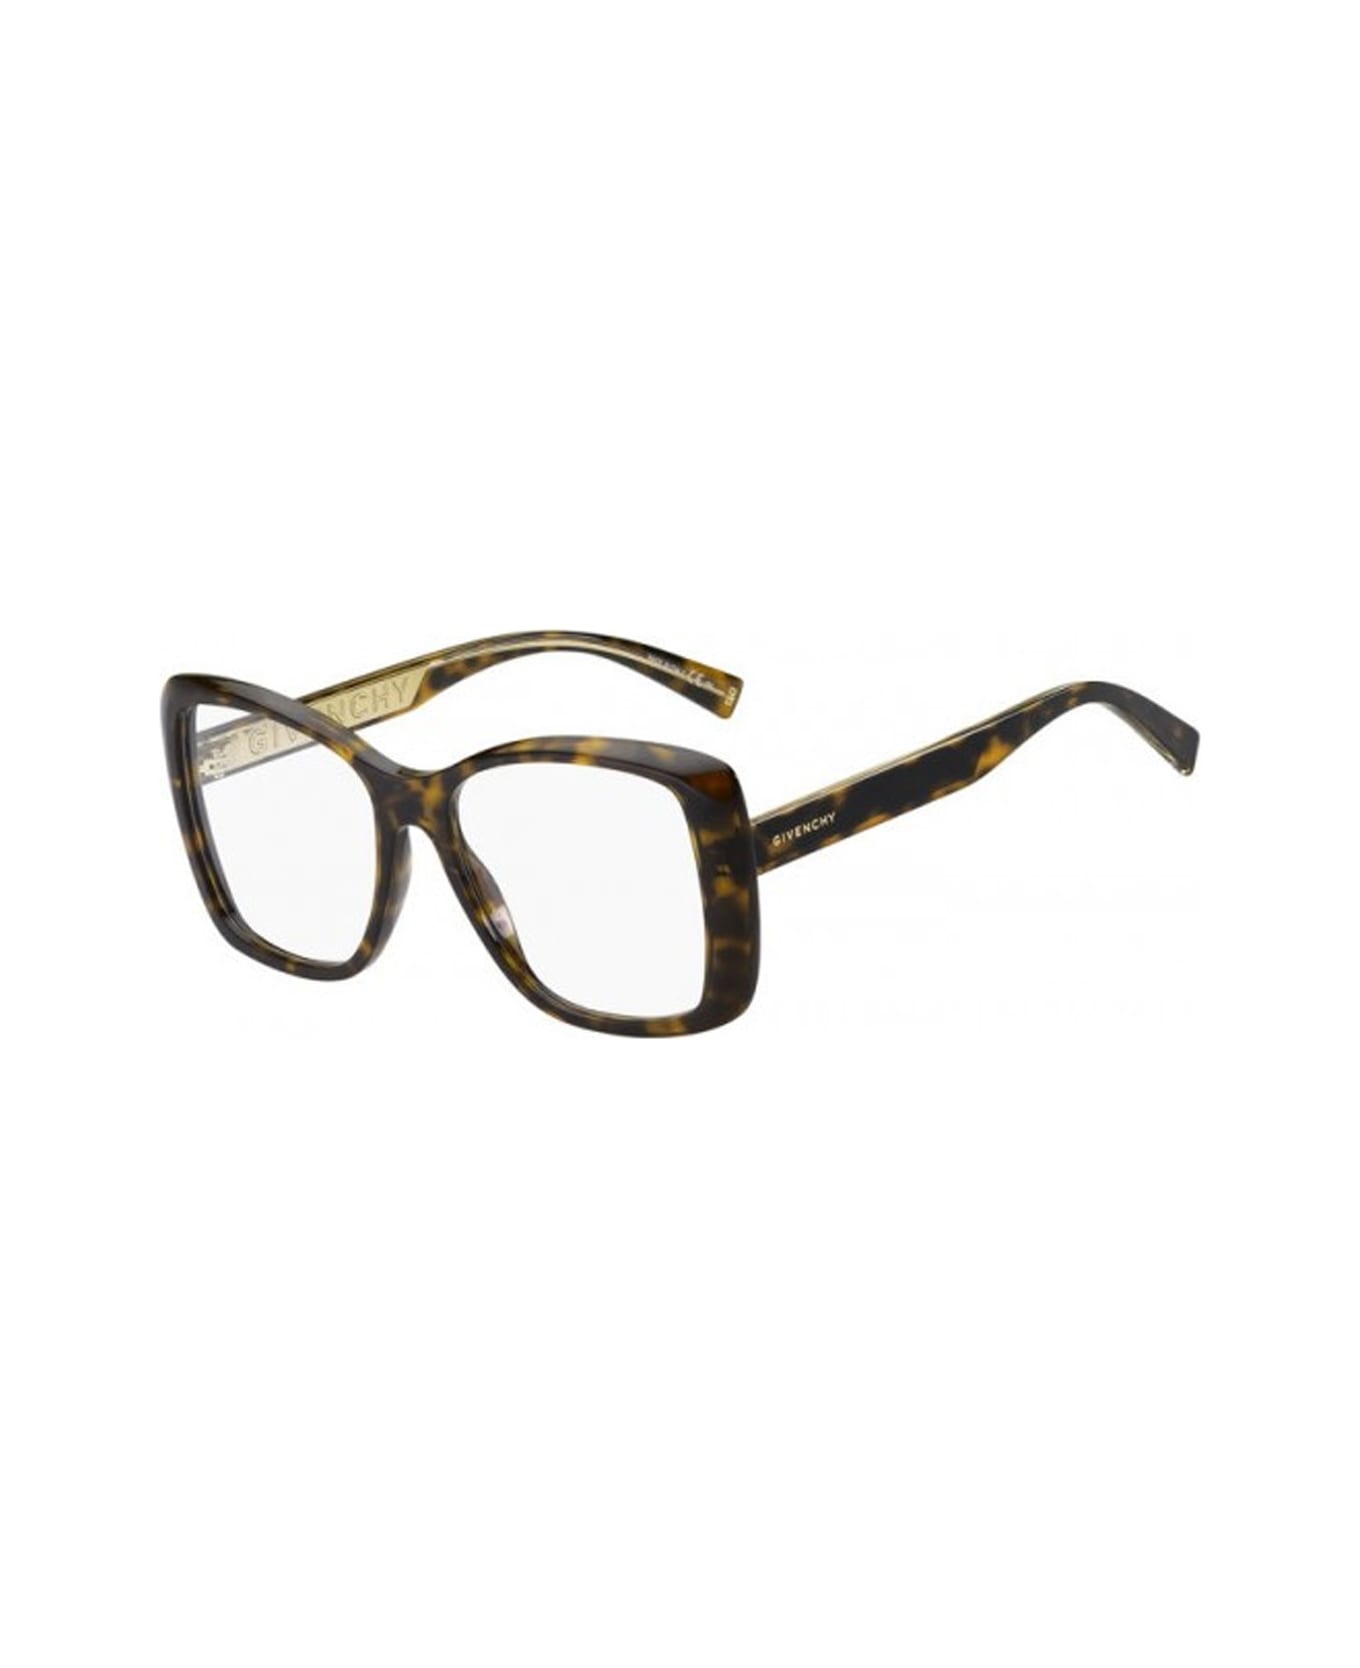 Givenchy Eyewear Gv 0135 Glasses - Marrone アイウェア